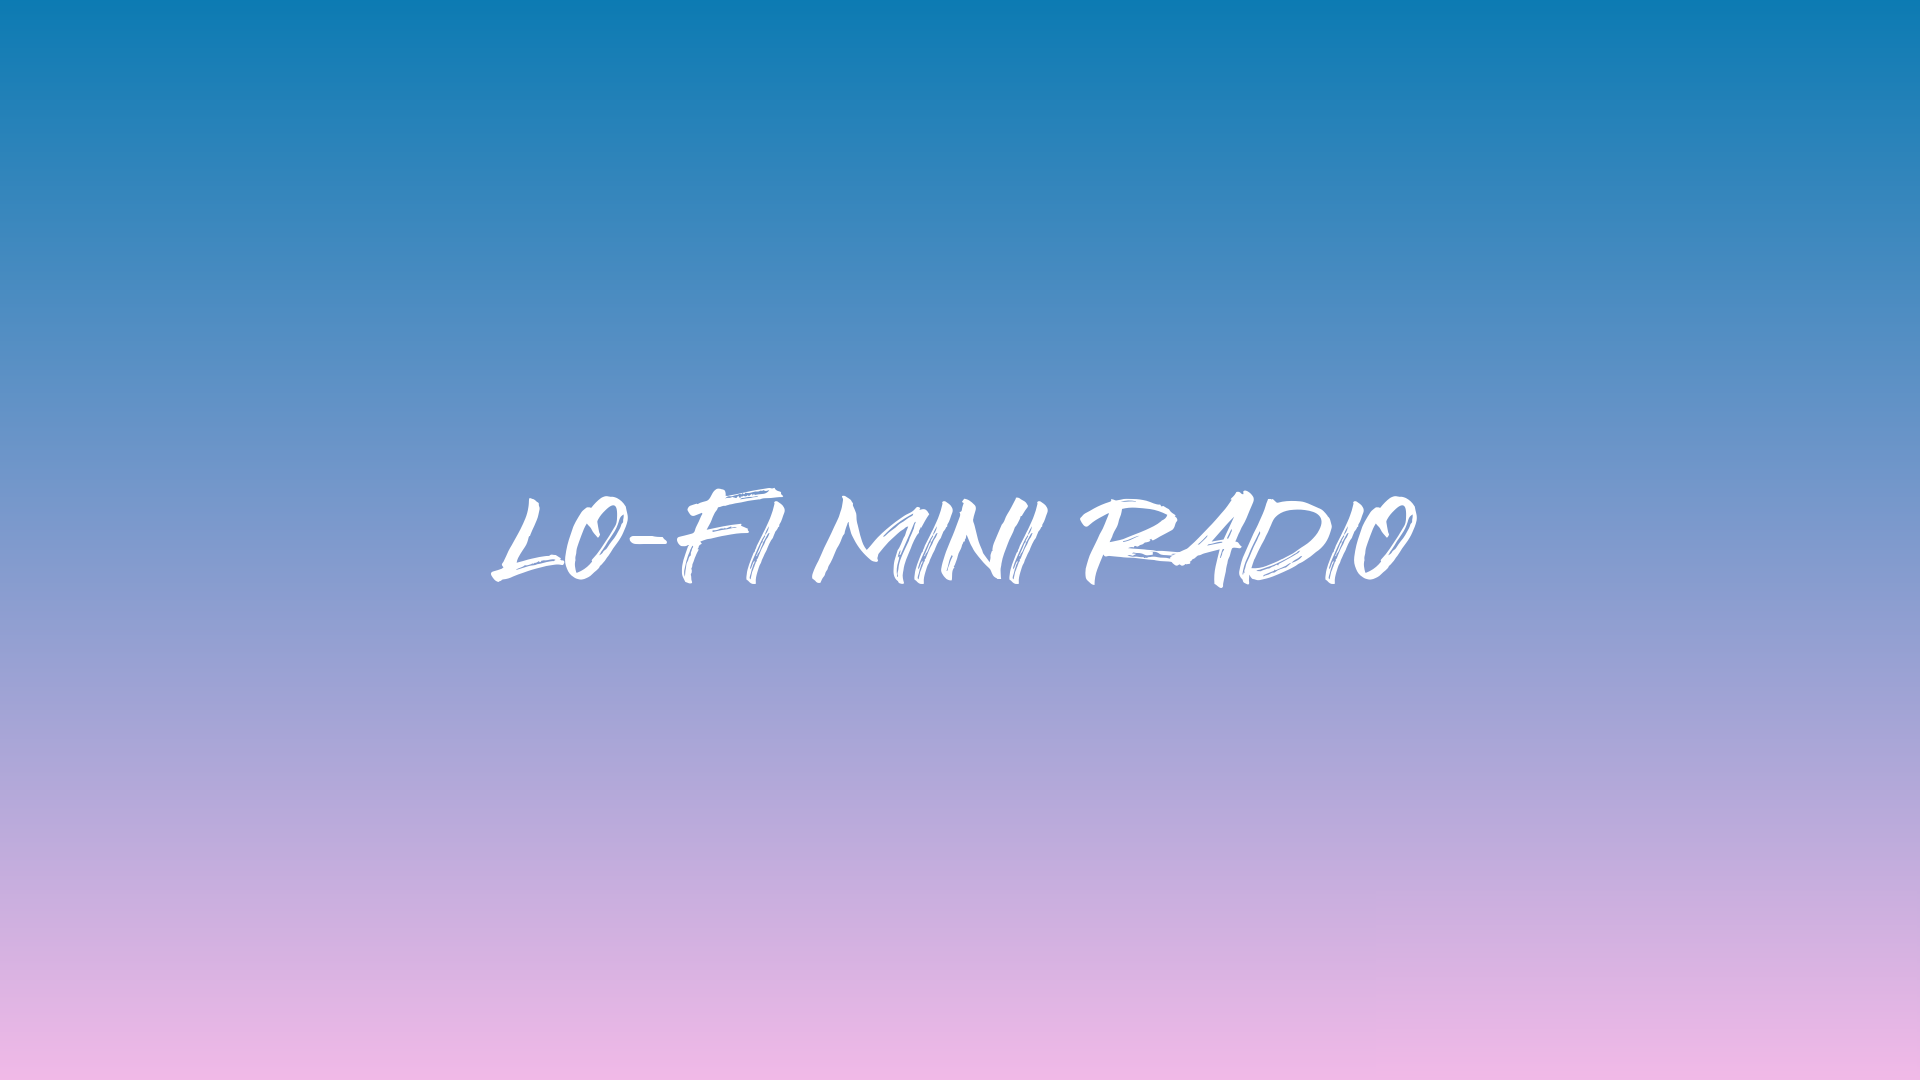 Lo-Fi Mini Radio